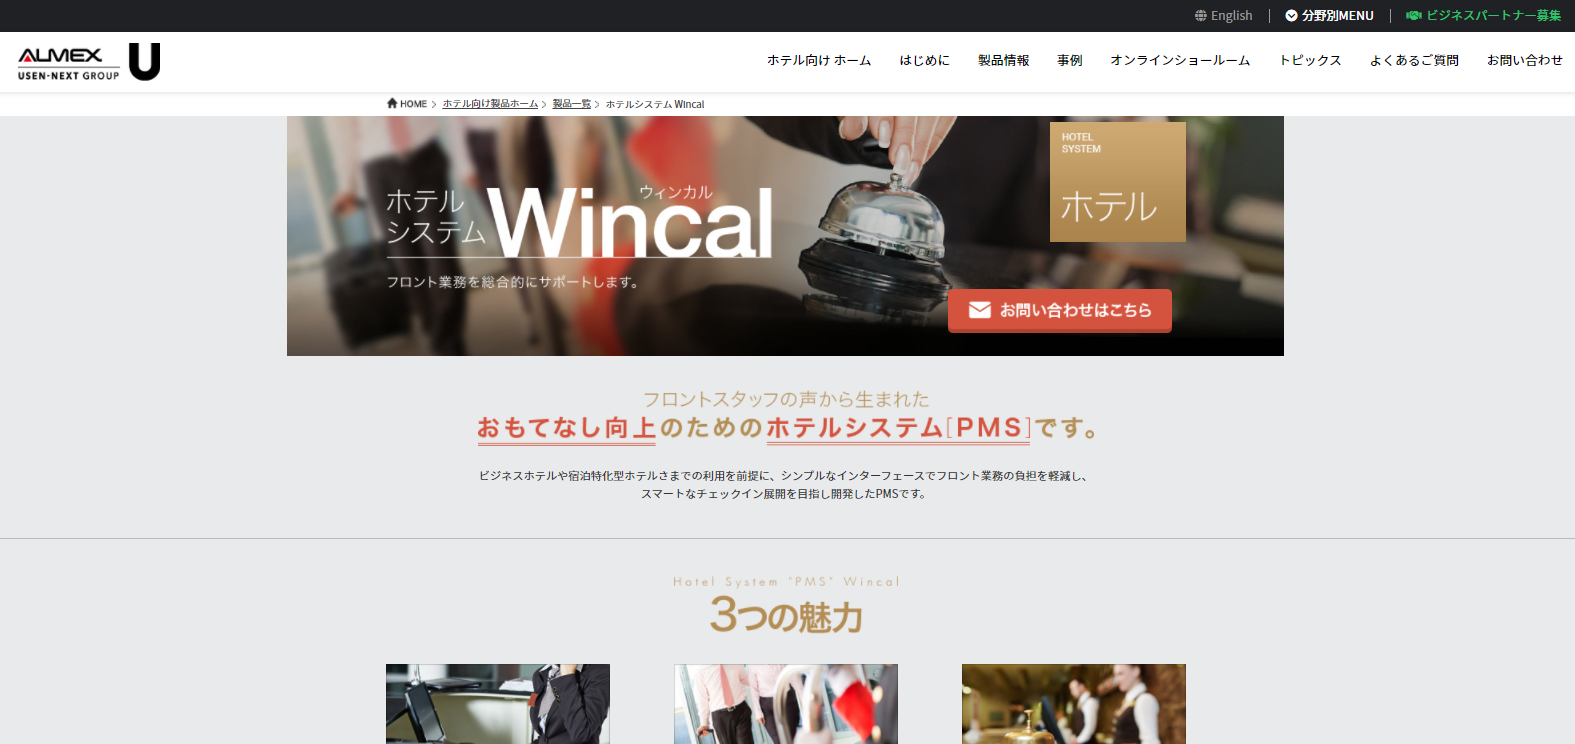 レビュー募集中！Wincalを紹介・競合製品の評判をユーザーレビュー